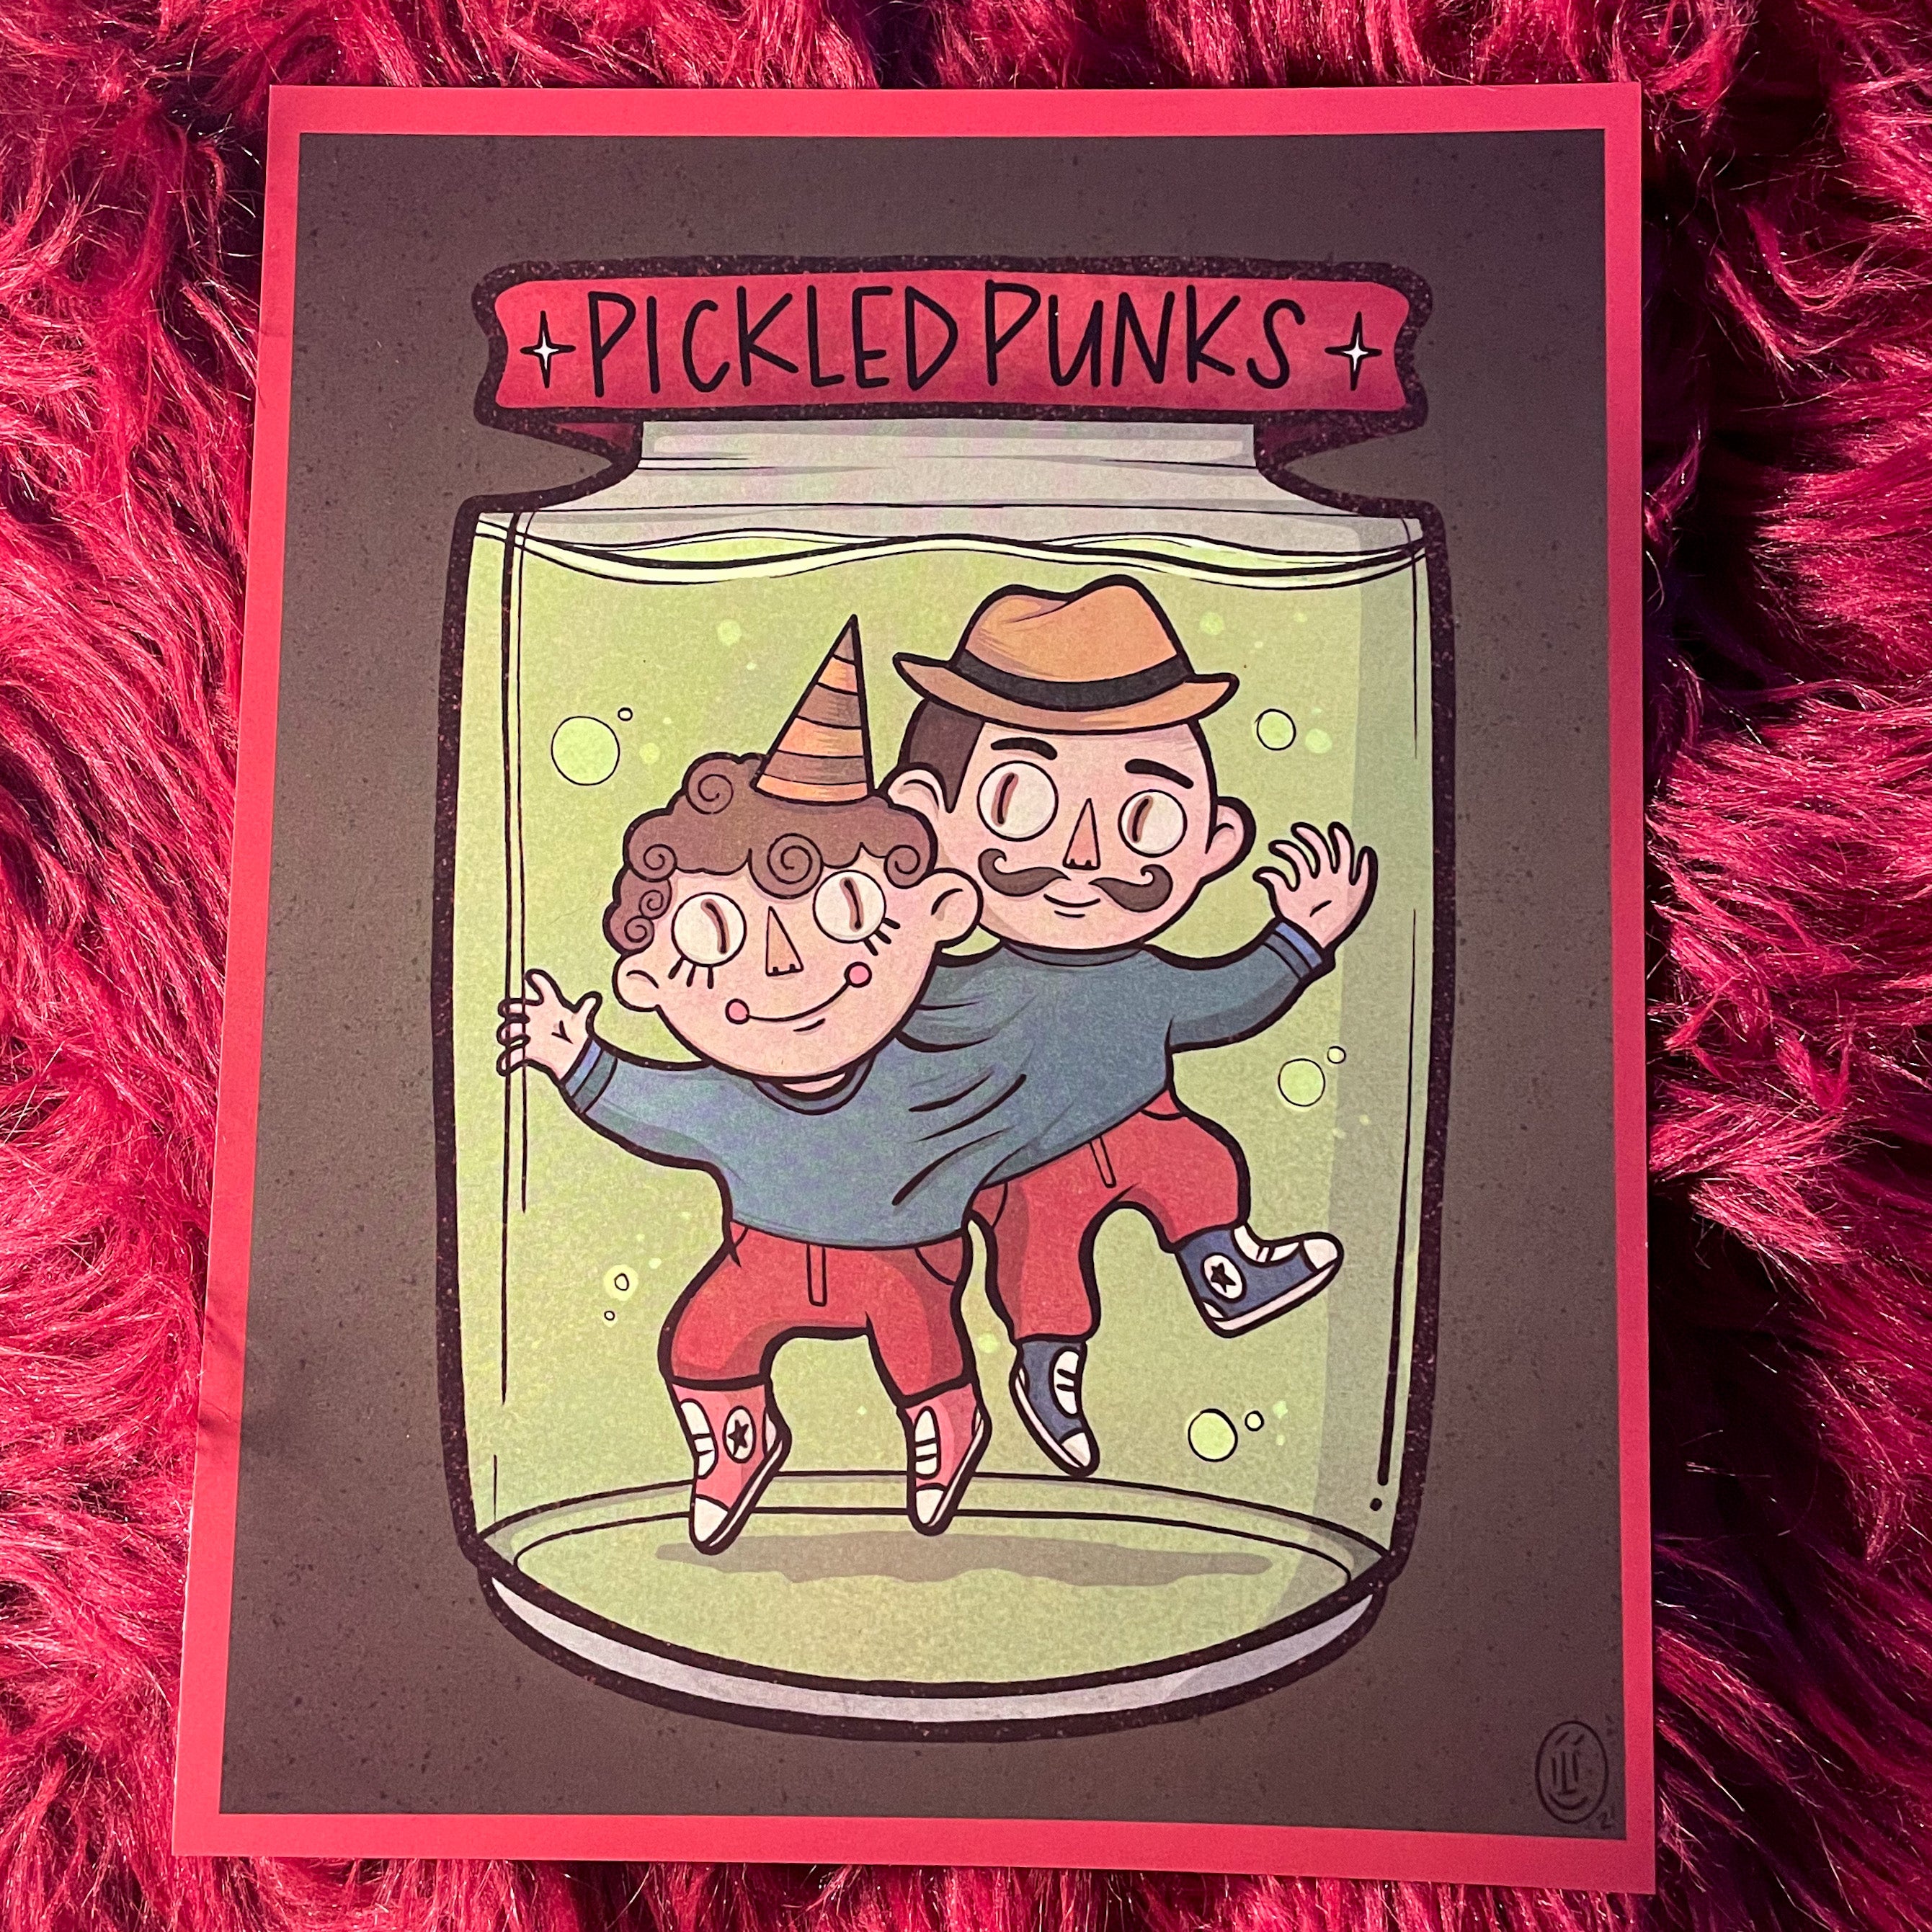 Pickled Punks